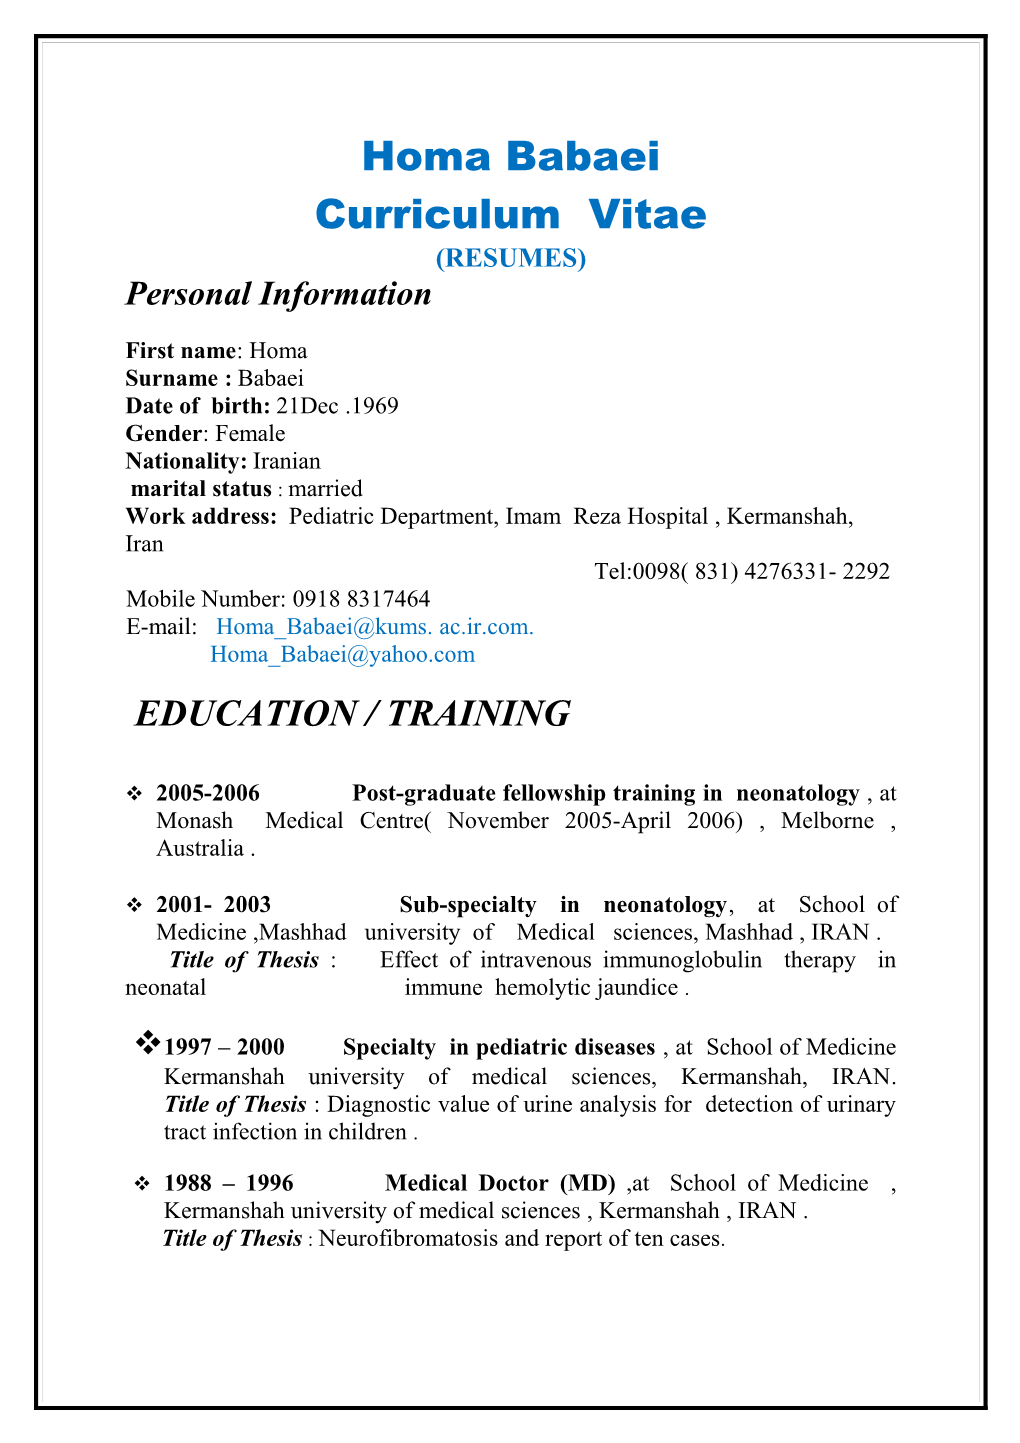 Curriculum Vitae s501